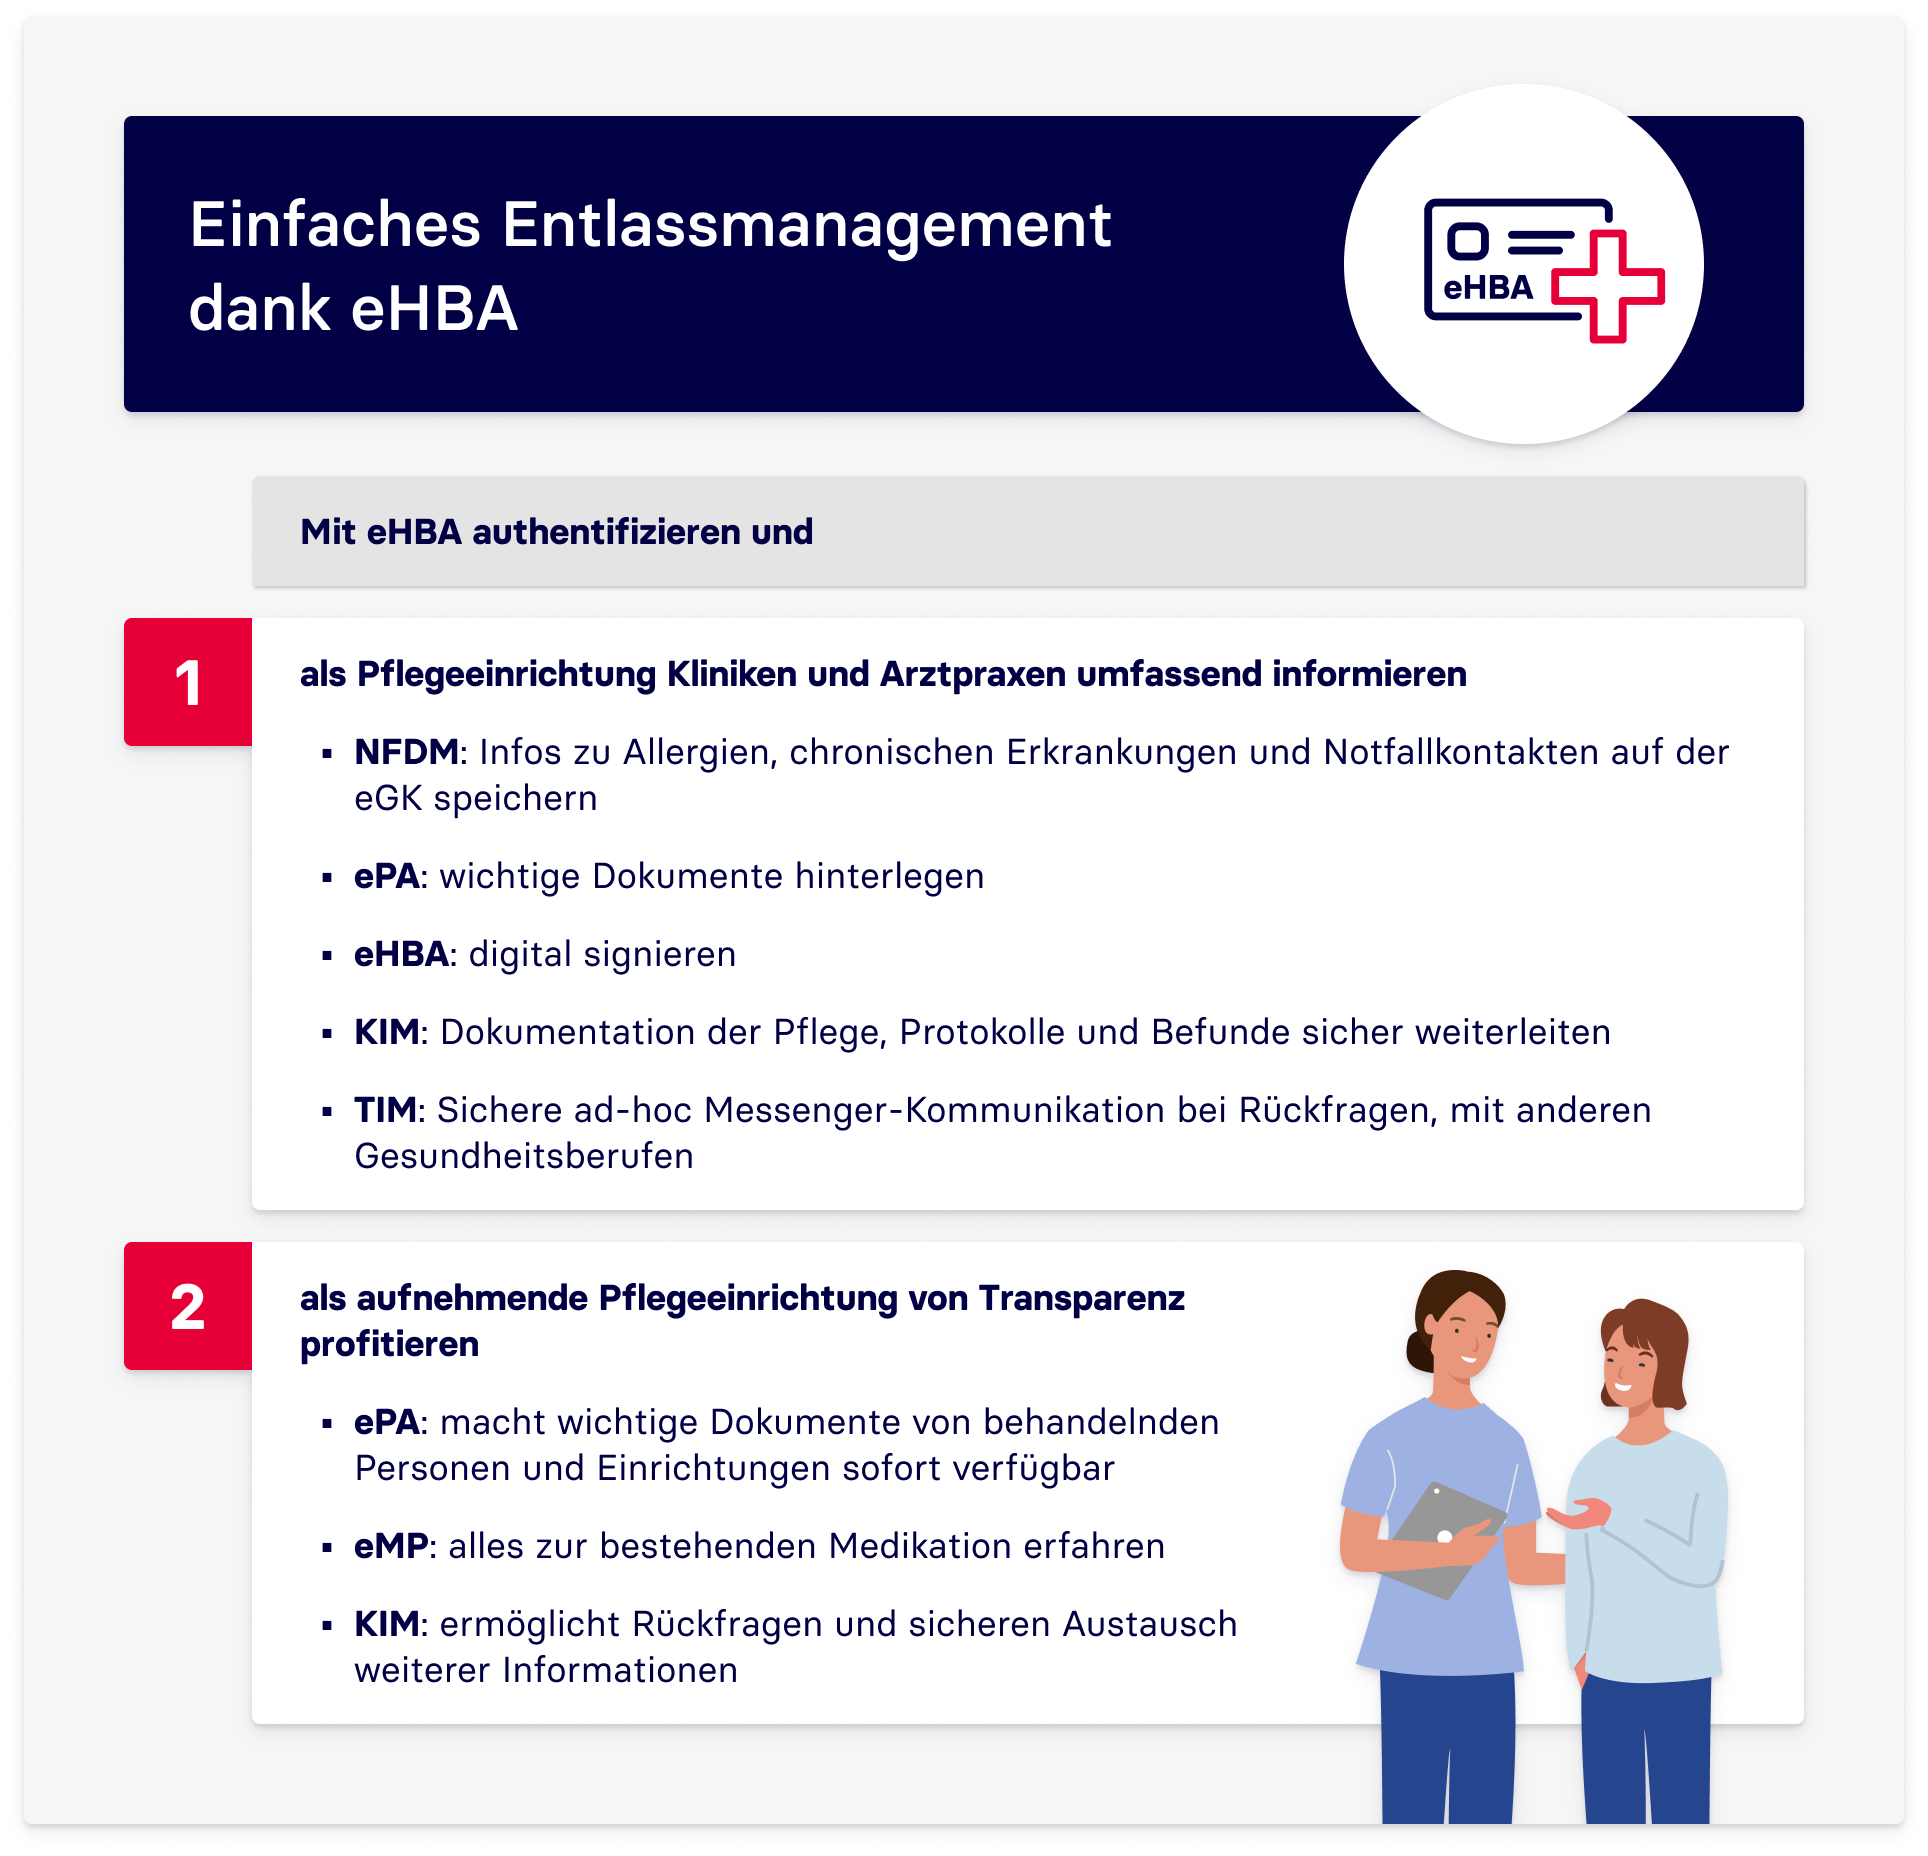 Infografik, die das einfache Entlassmanagement durch Pflegefachkräfte mit Hilfe des elektronischen Heilberufausweises (eHBA) erklärt